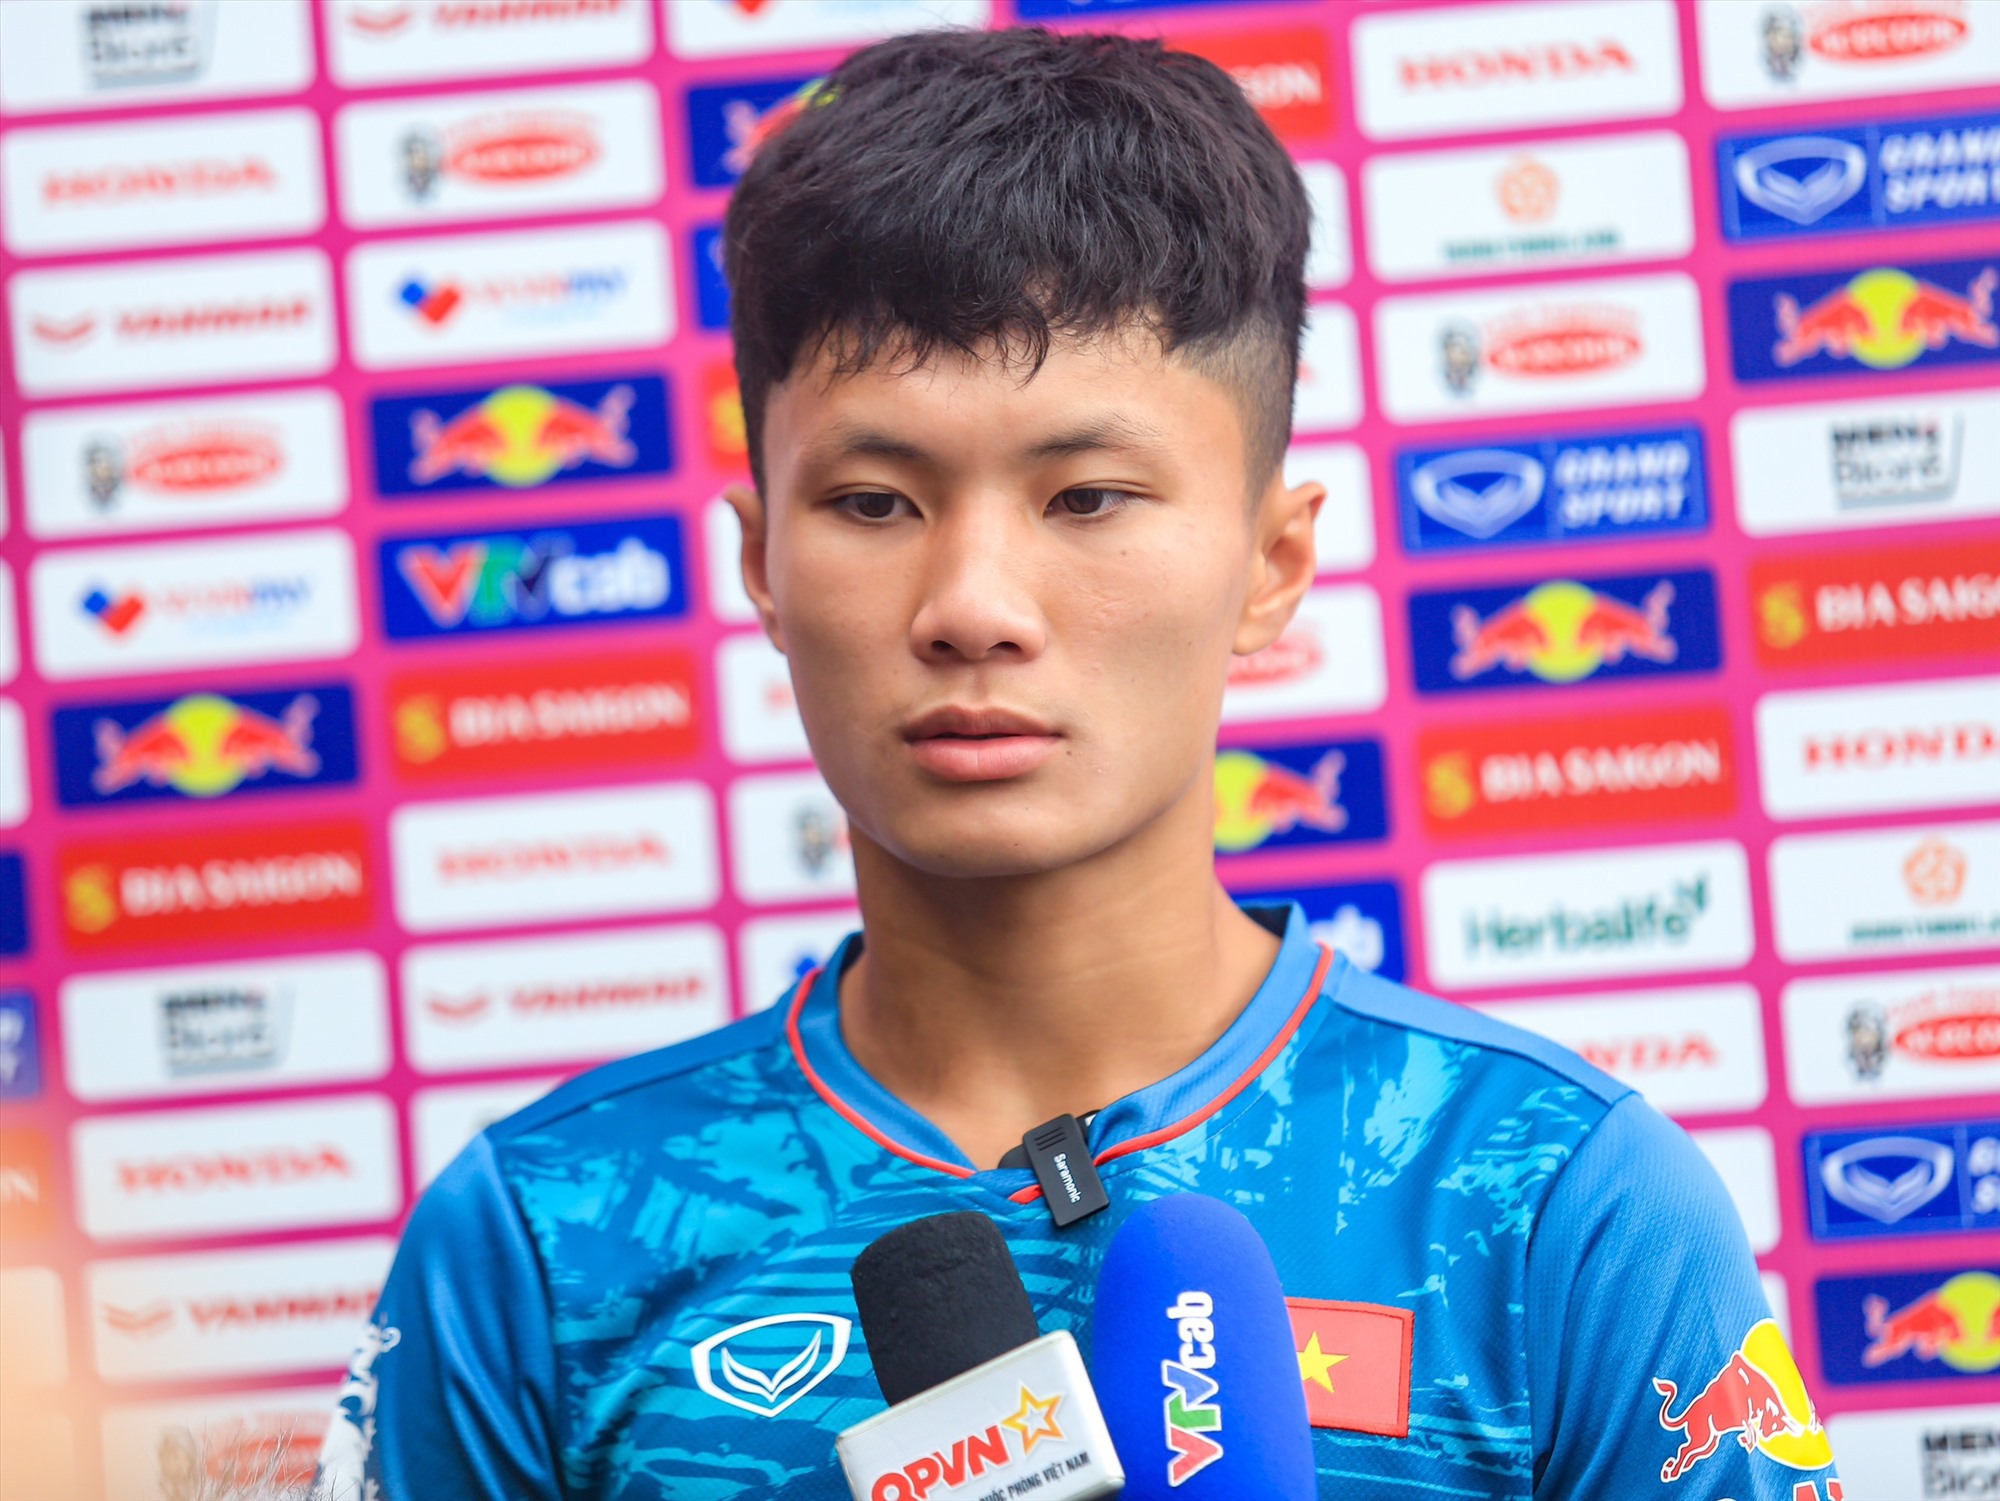 Tiền vệ U23 Việt Nam: Công Phượng dặn tôi nỗ lực và ghi điểm trong mắt huấn luyện viên Troussie